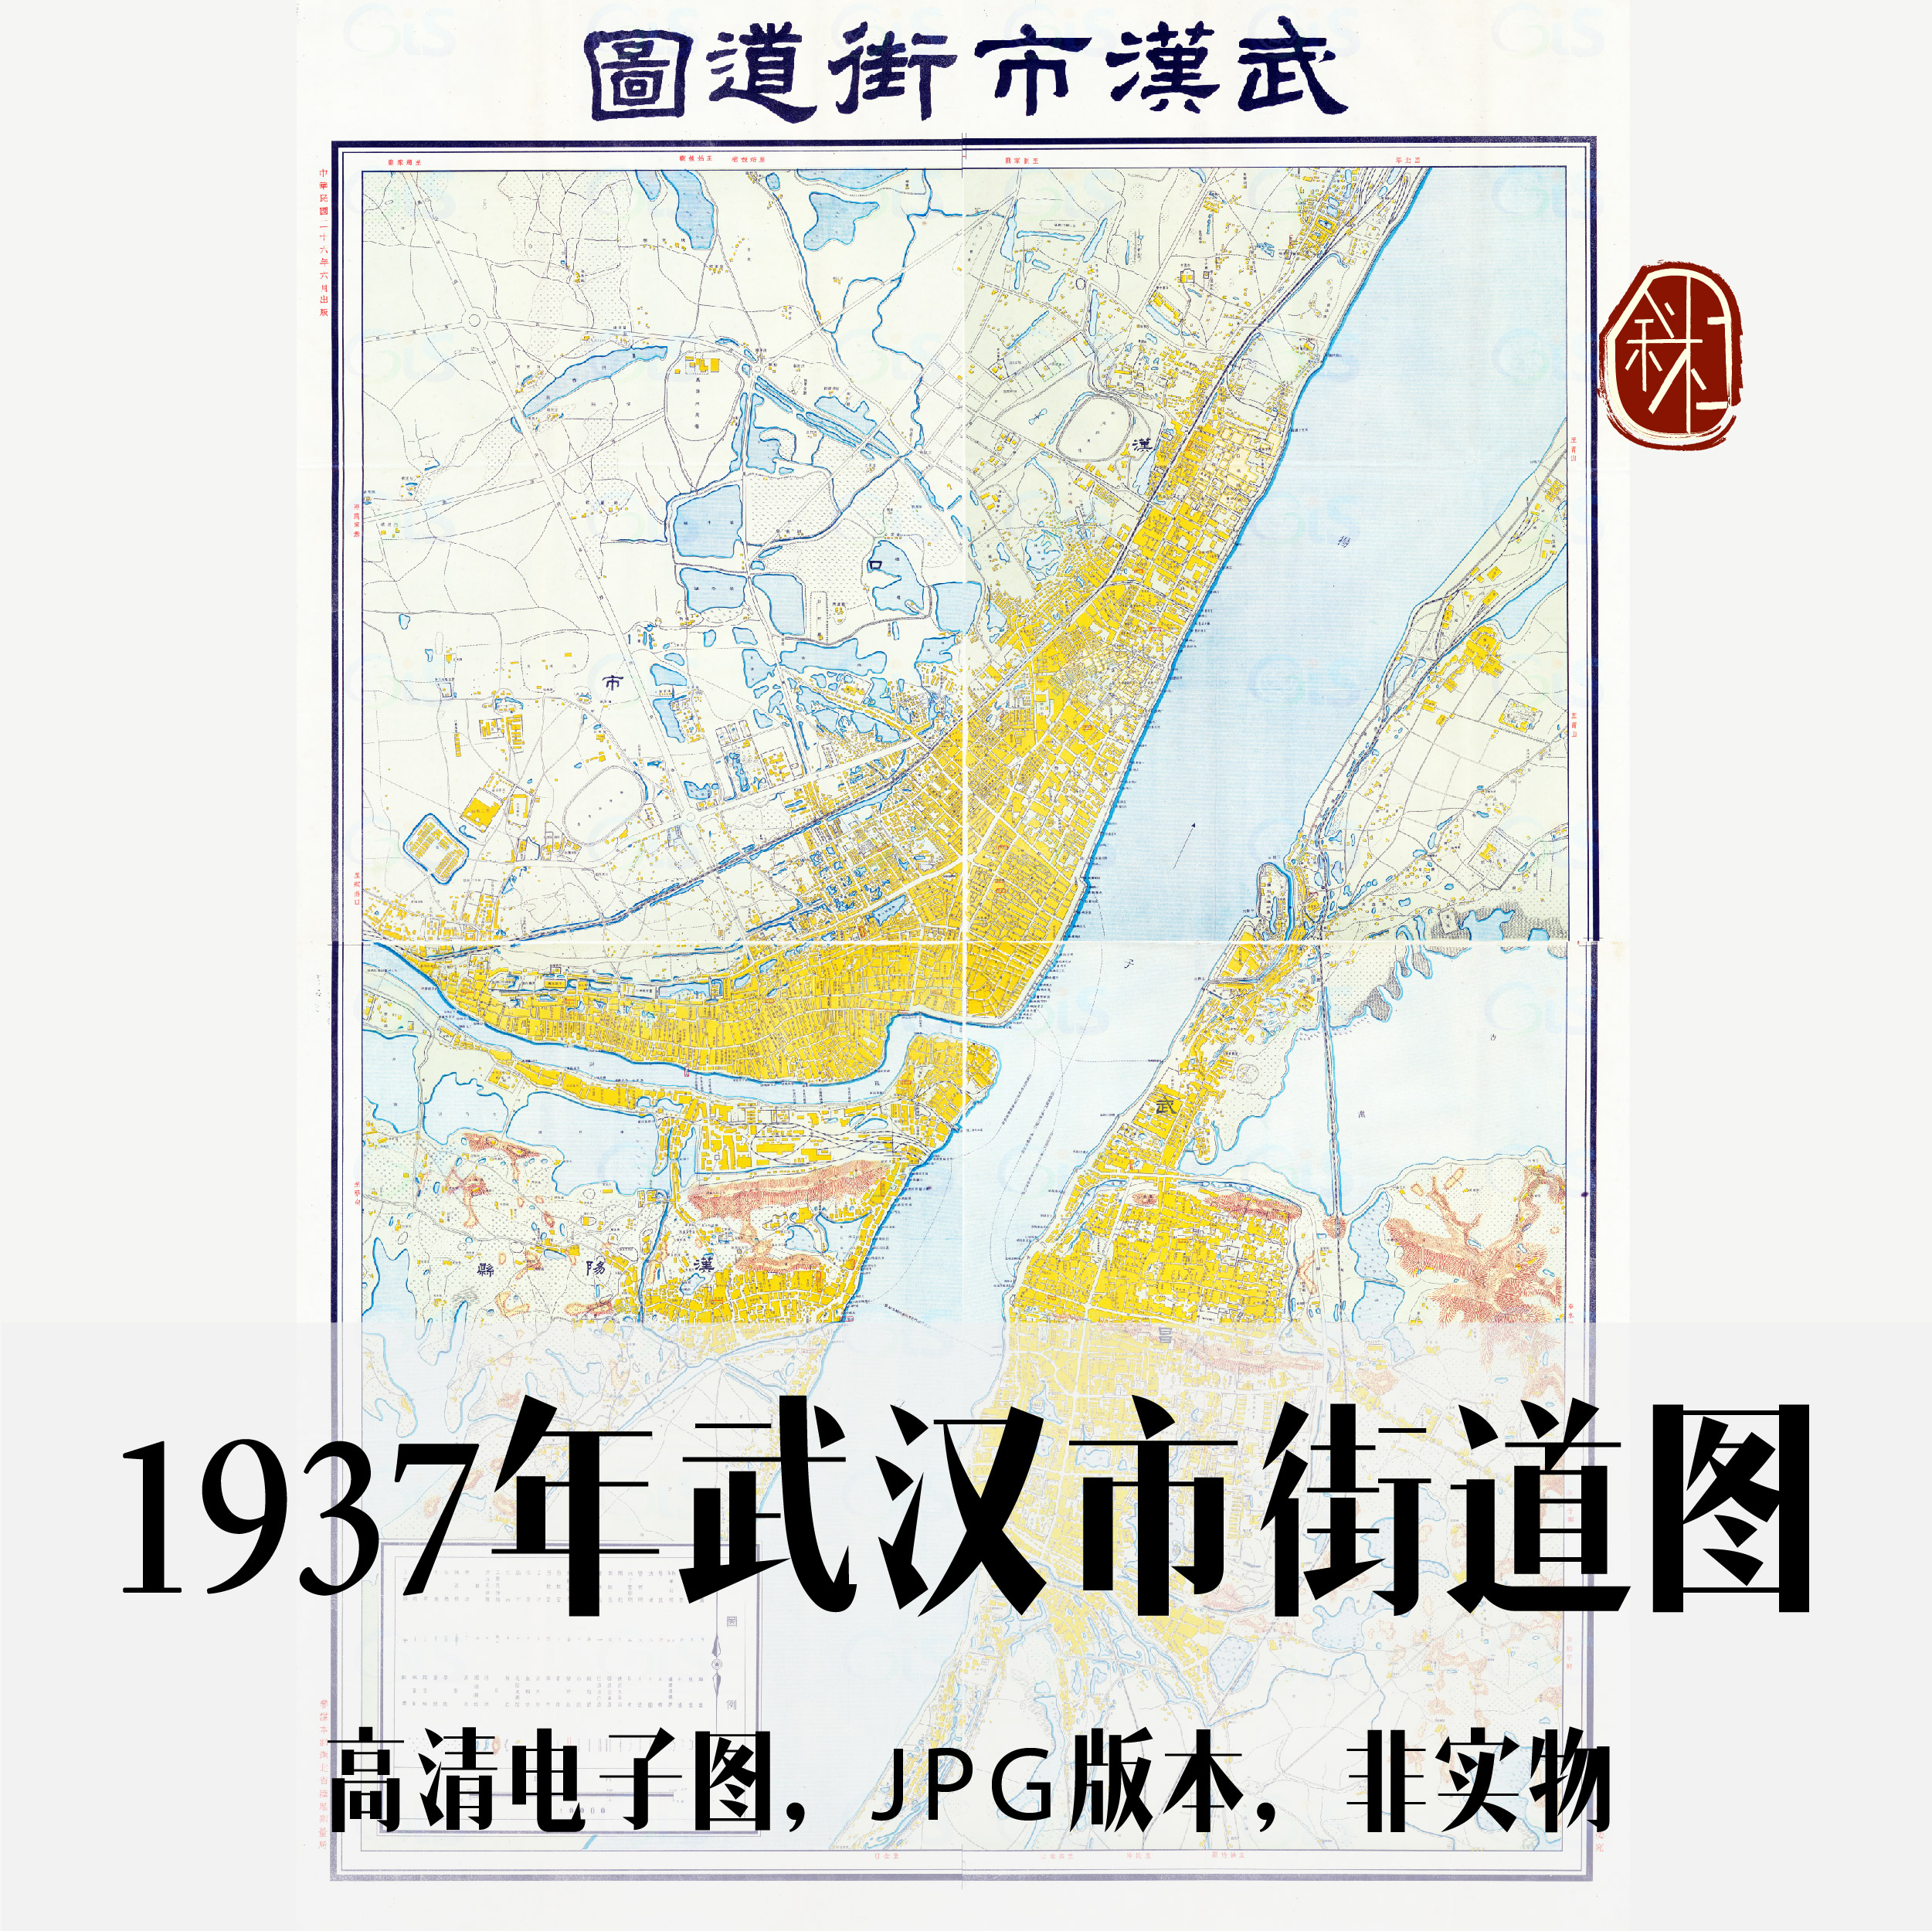 1937年武汉市街道图电子手绘老地图历史地理资料道具素材